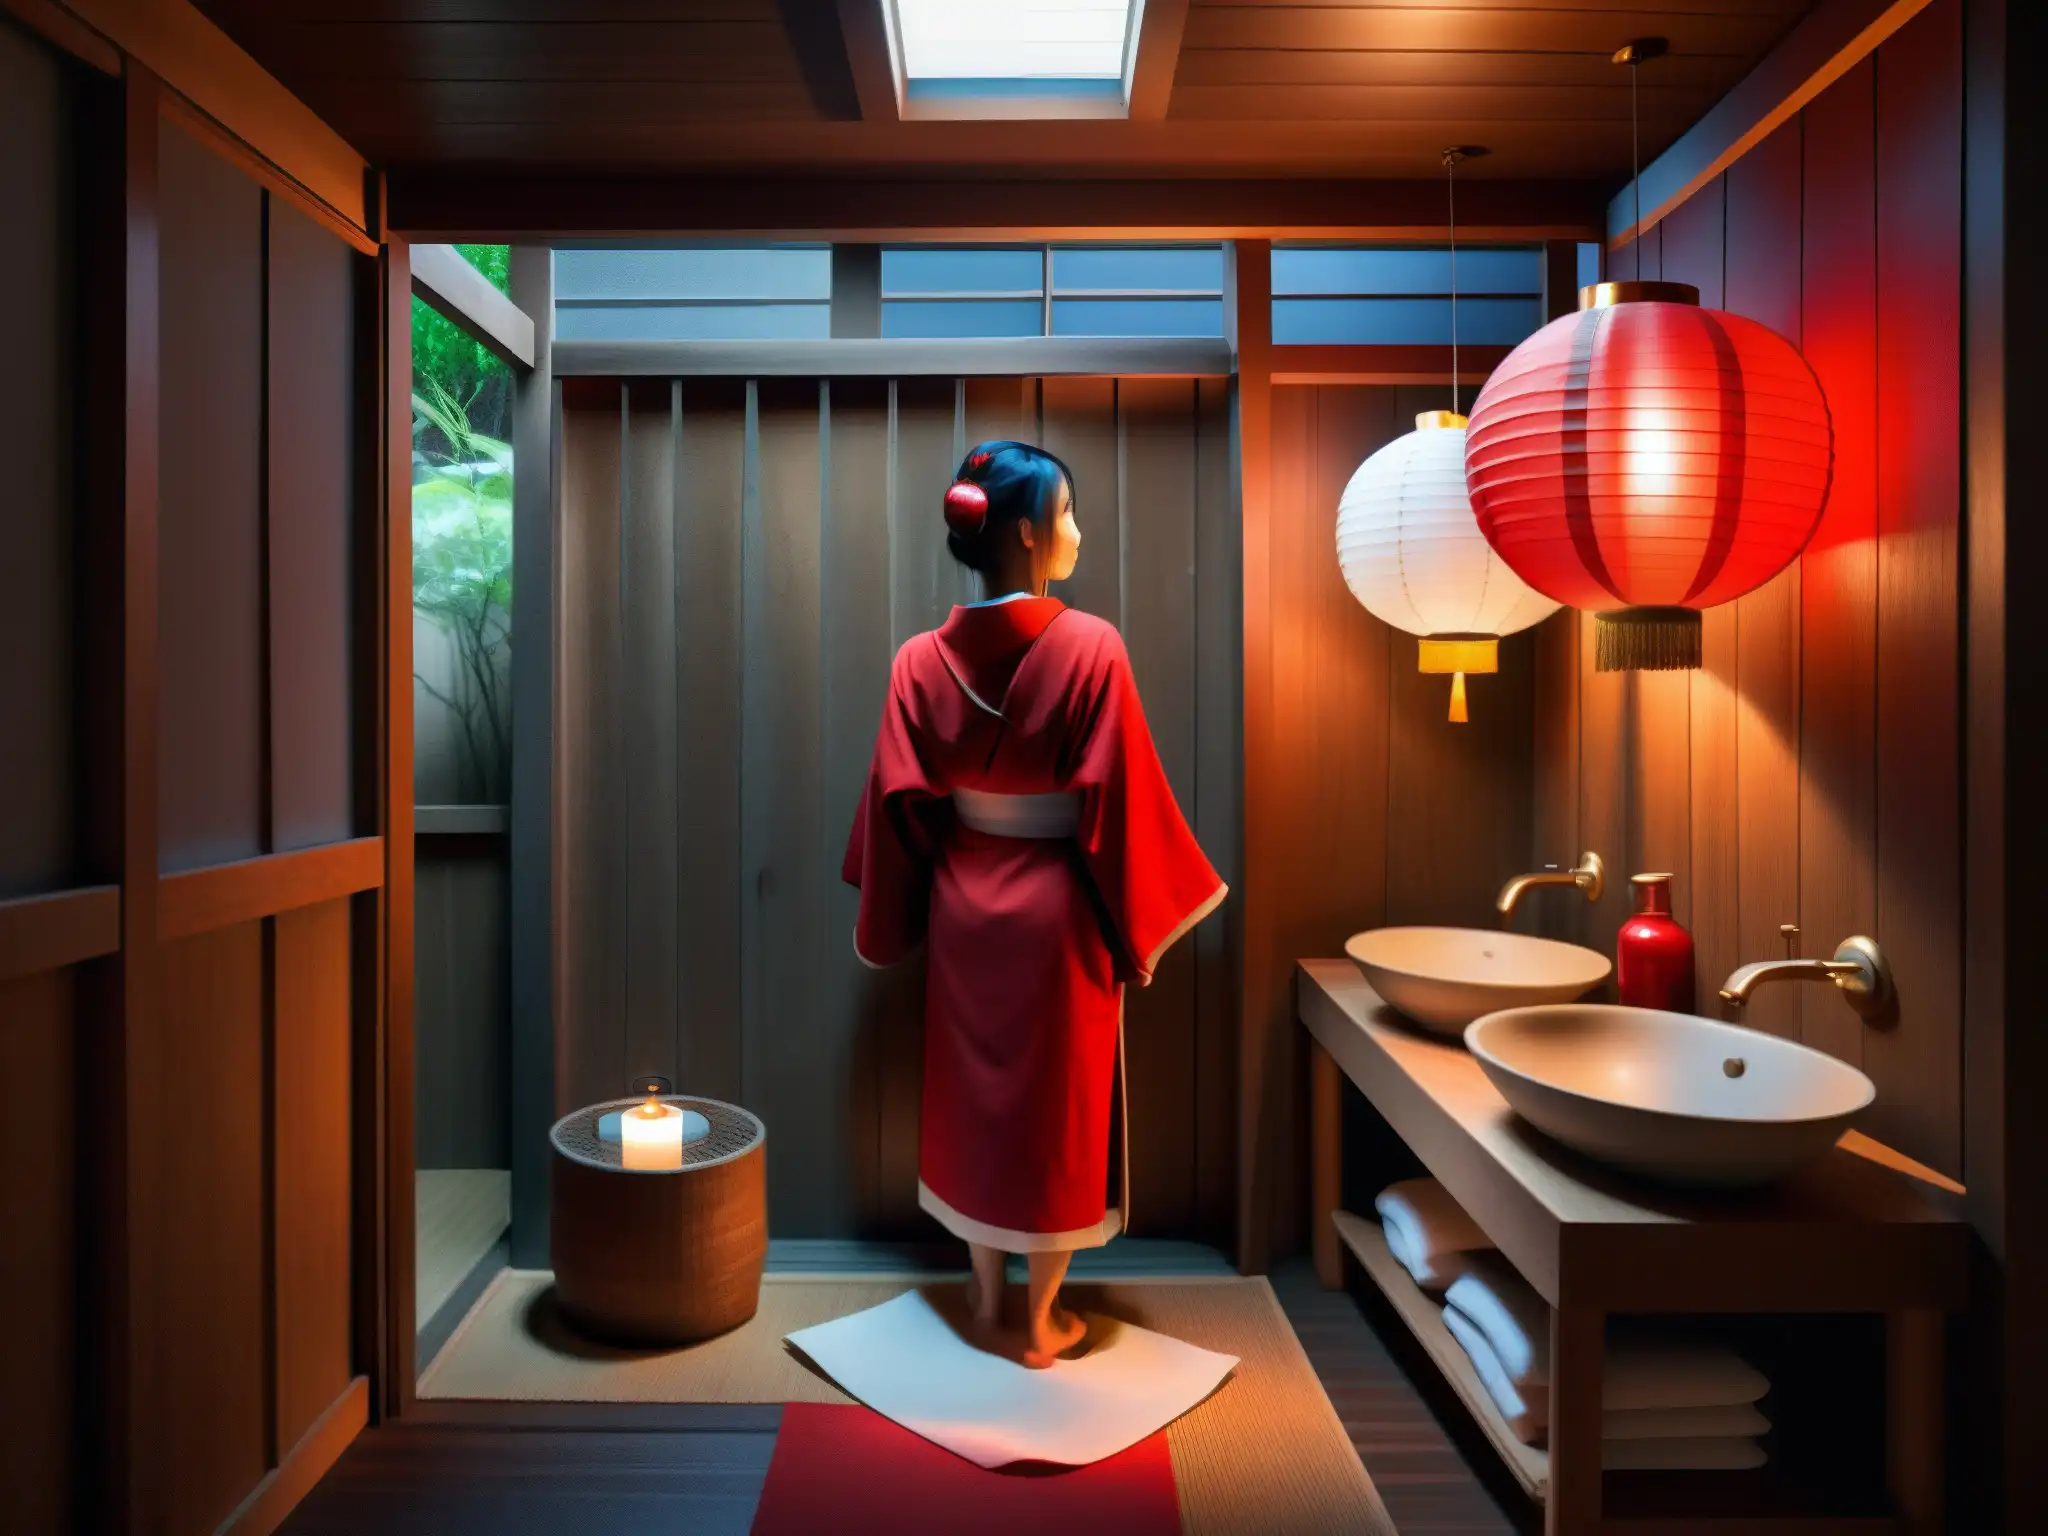 Un baño japonés con luz tenue y misteriosa, donde una figura en un manto rojo sostiene un rollo de papel higiénico rojo sangre